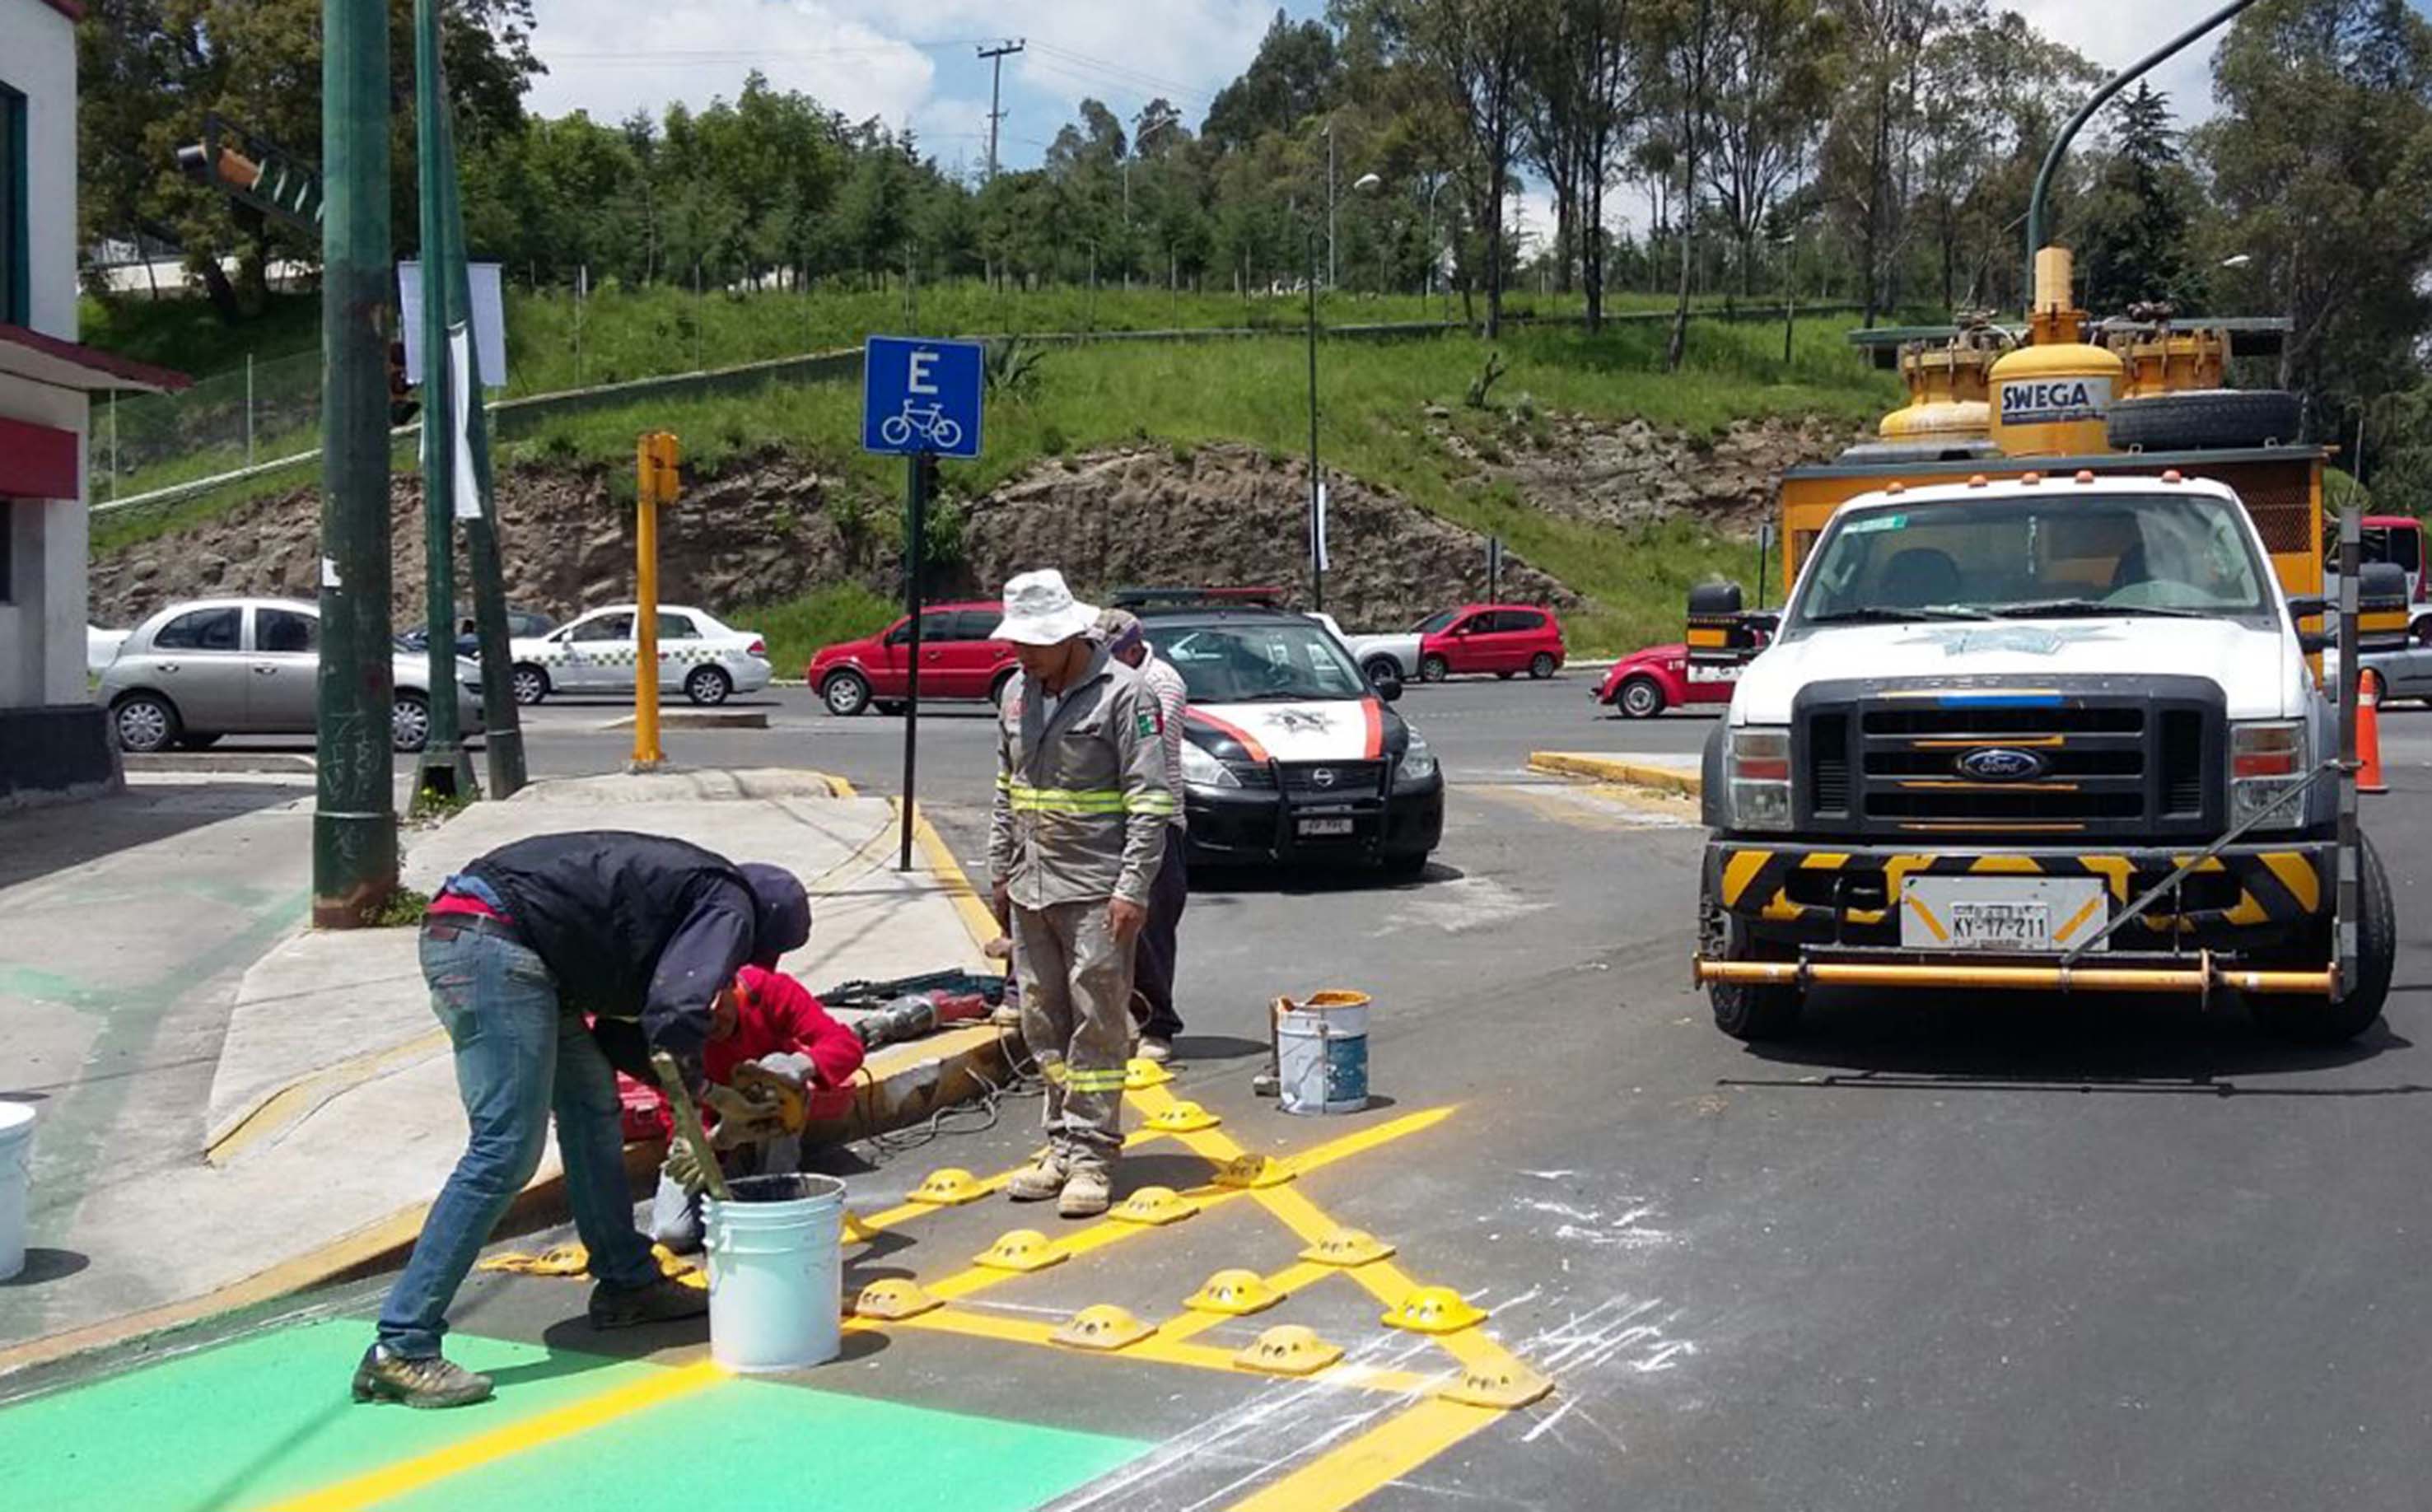 Avanzan trabajos de señalización en ciclovía de avenida Hidalgo